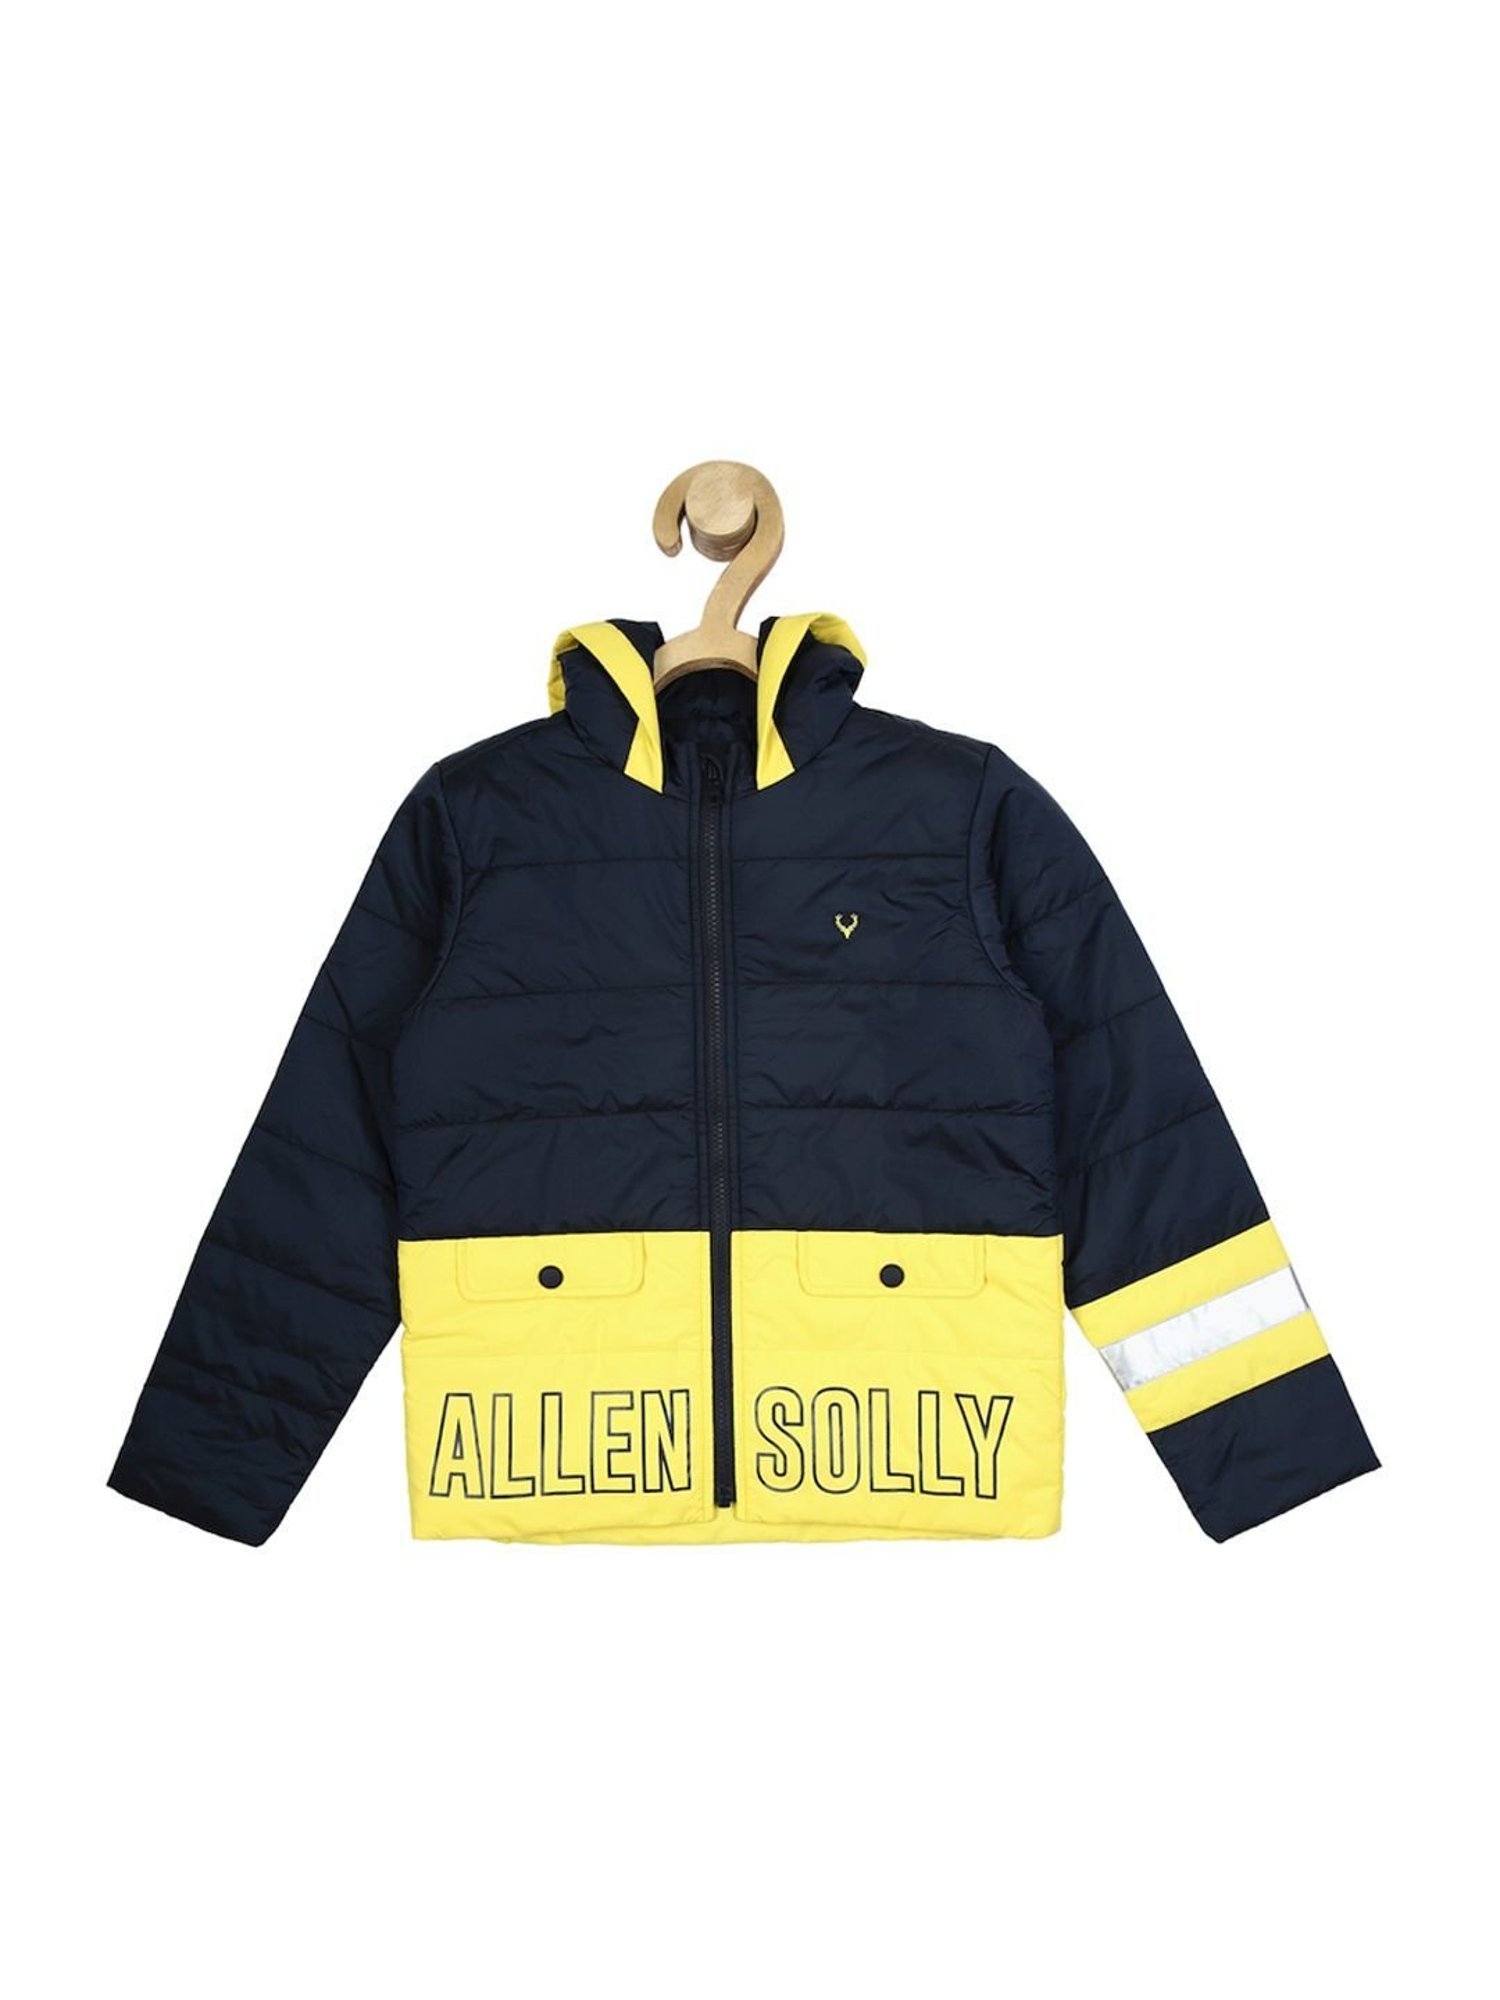 Buy Boys Yellow Print Regular Fit Jacket Online - 635135 | Allen Solly